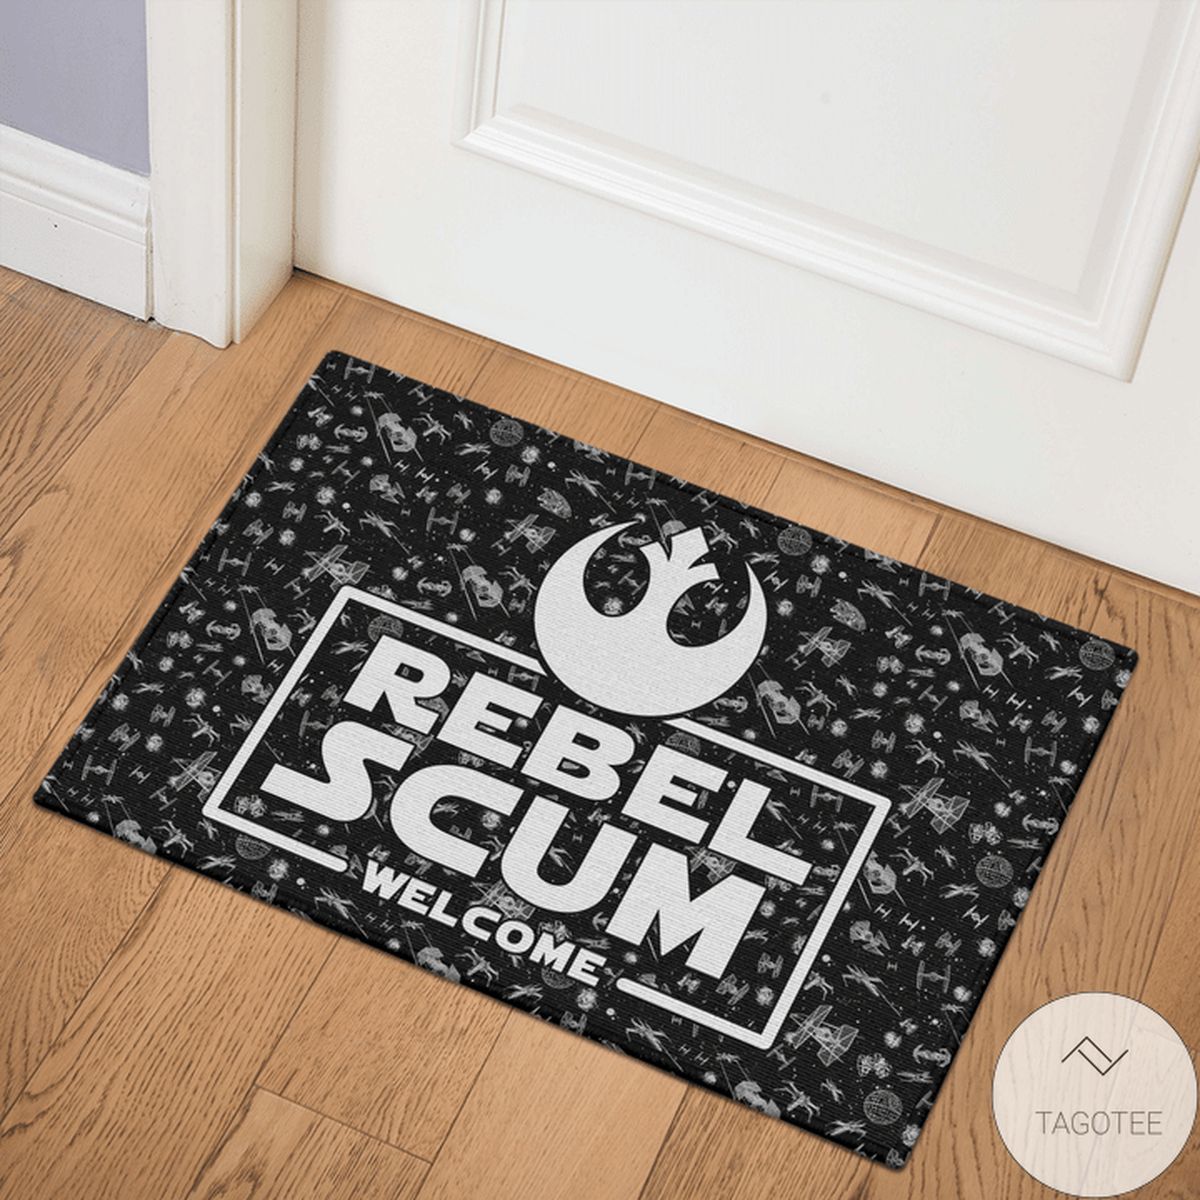 Star Wars Rebel Scum Welcome Doormat